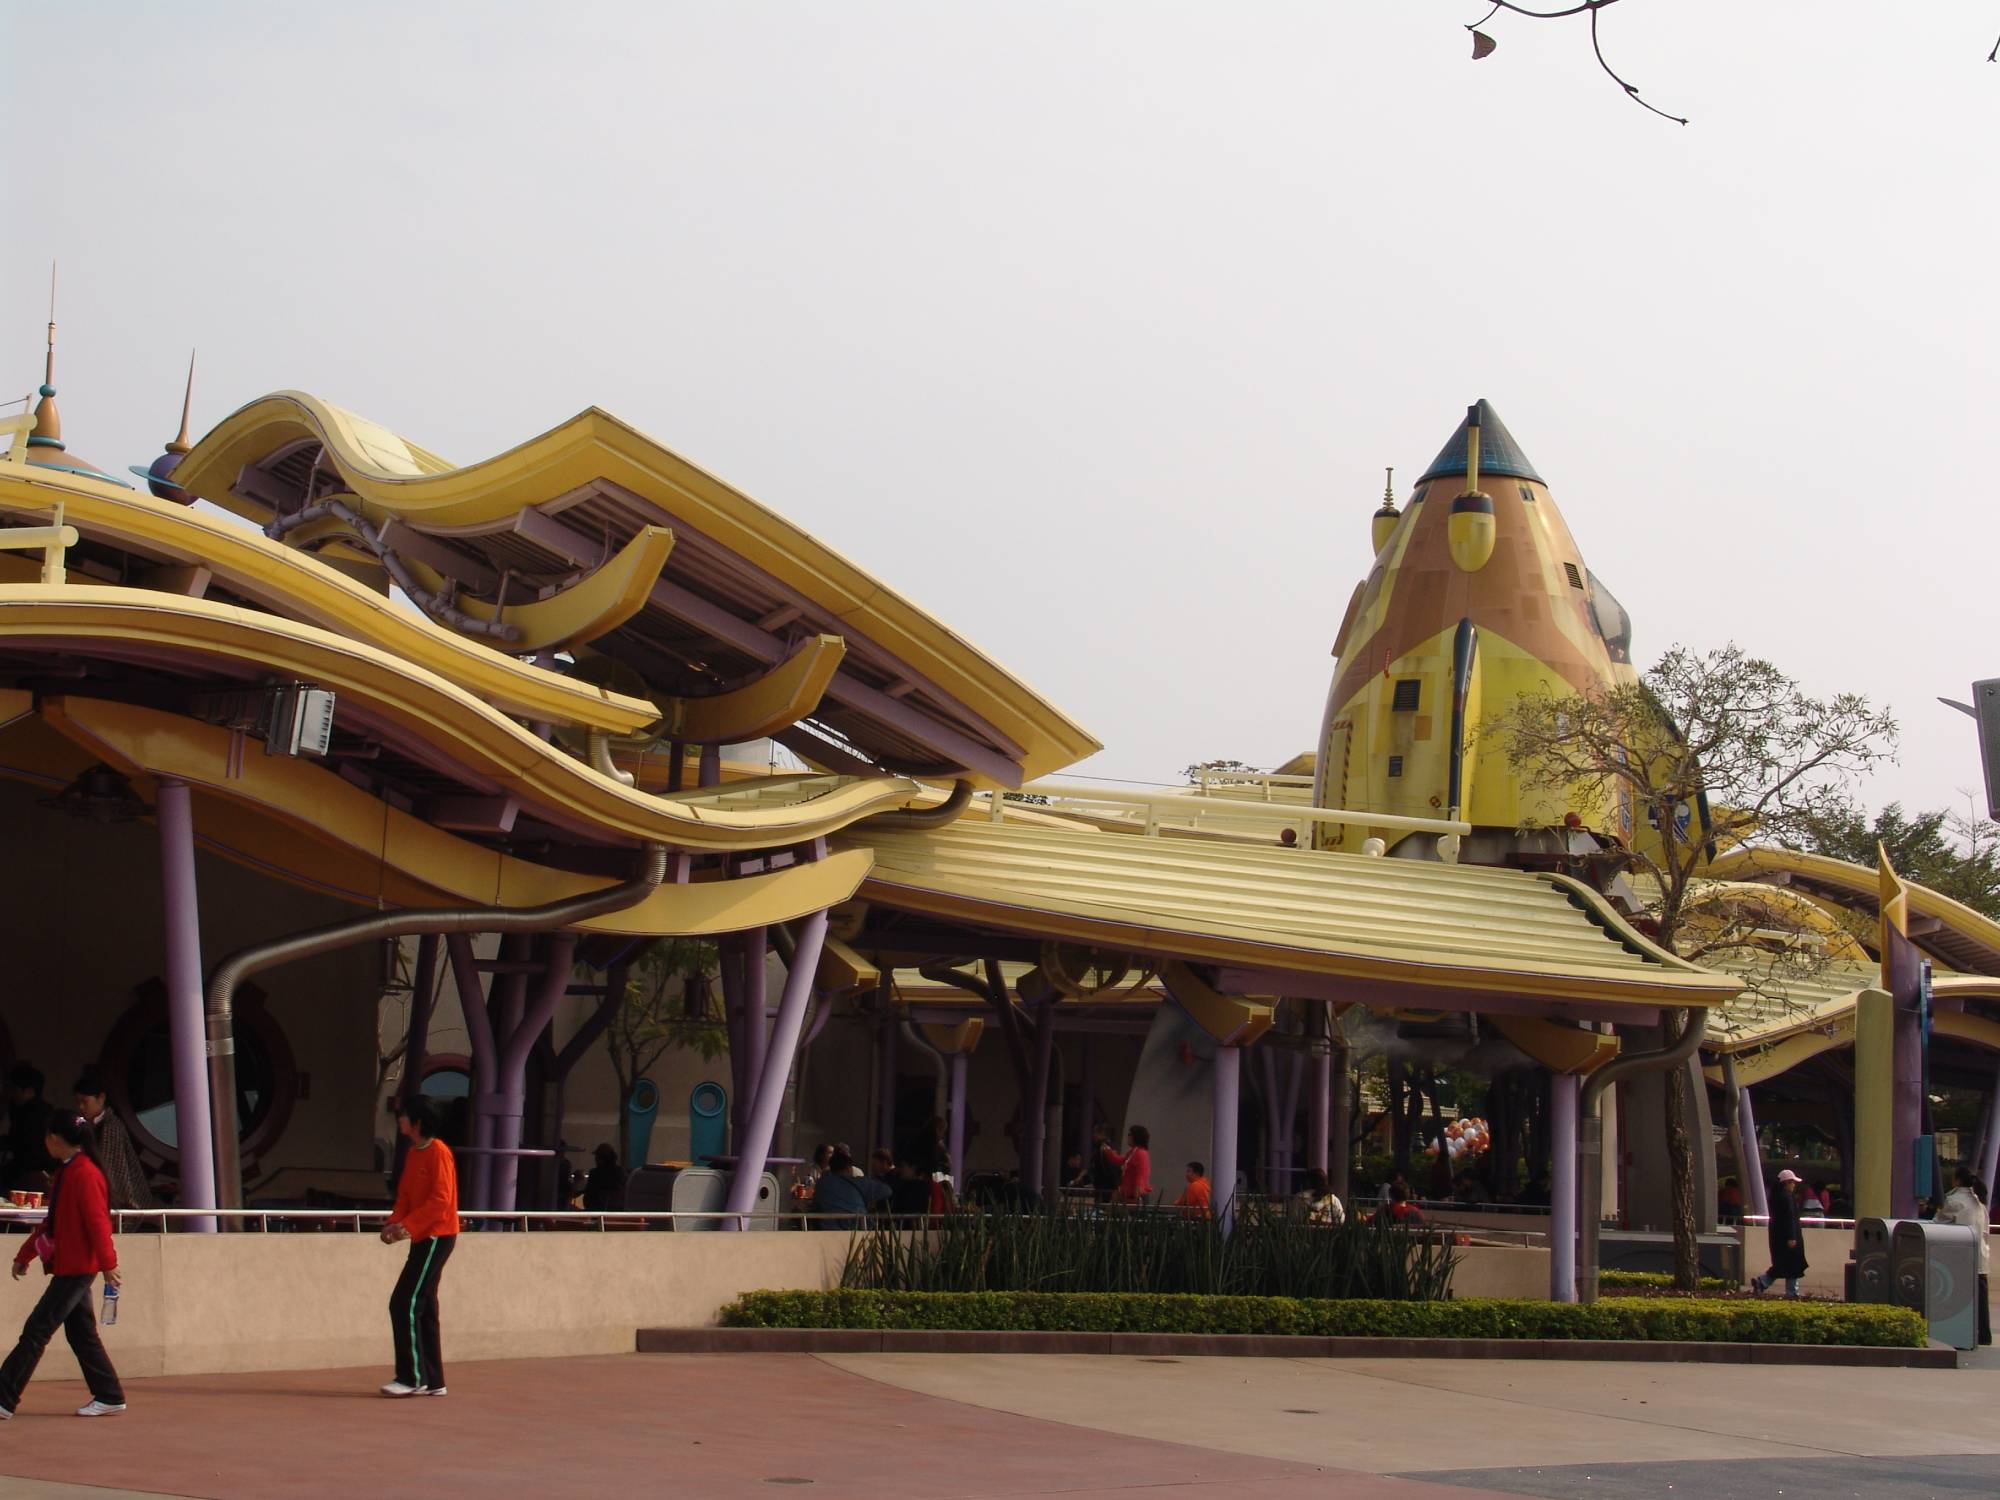 Hong Kong Disneyland - Tomorrowland